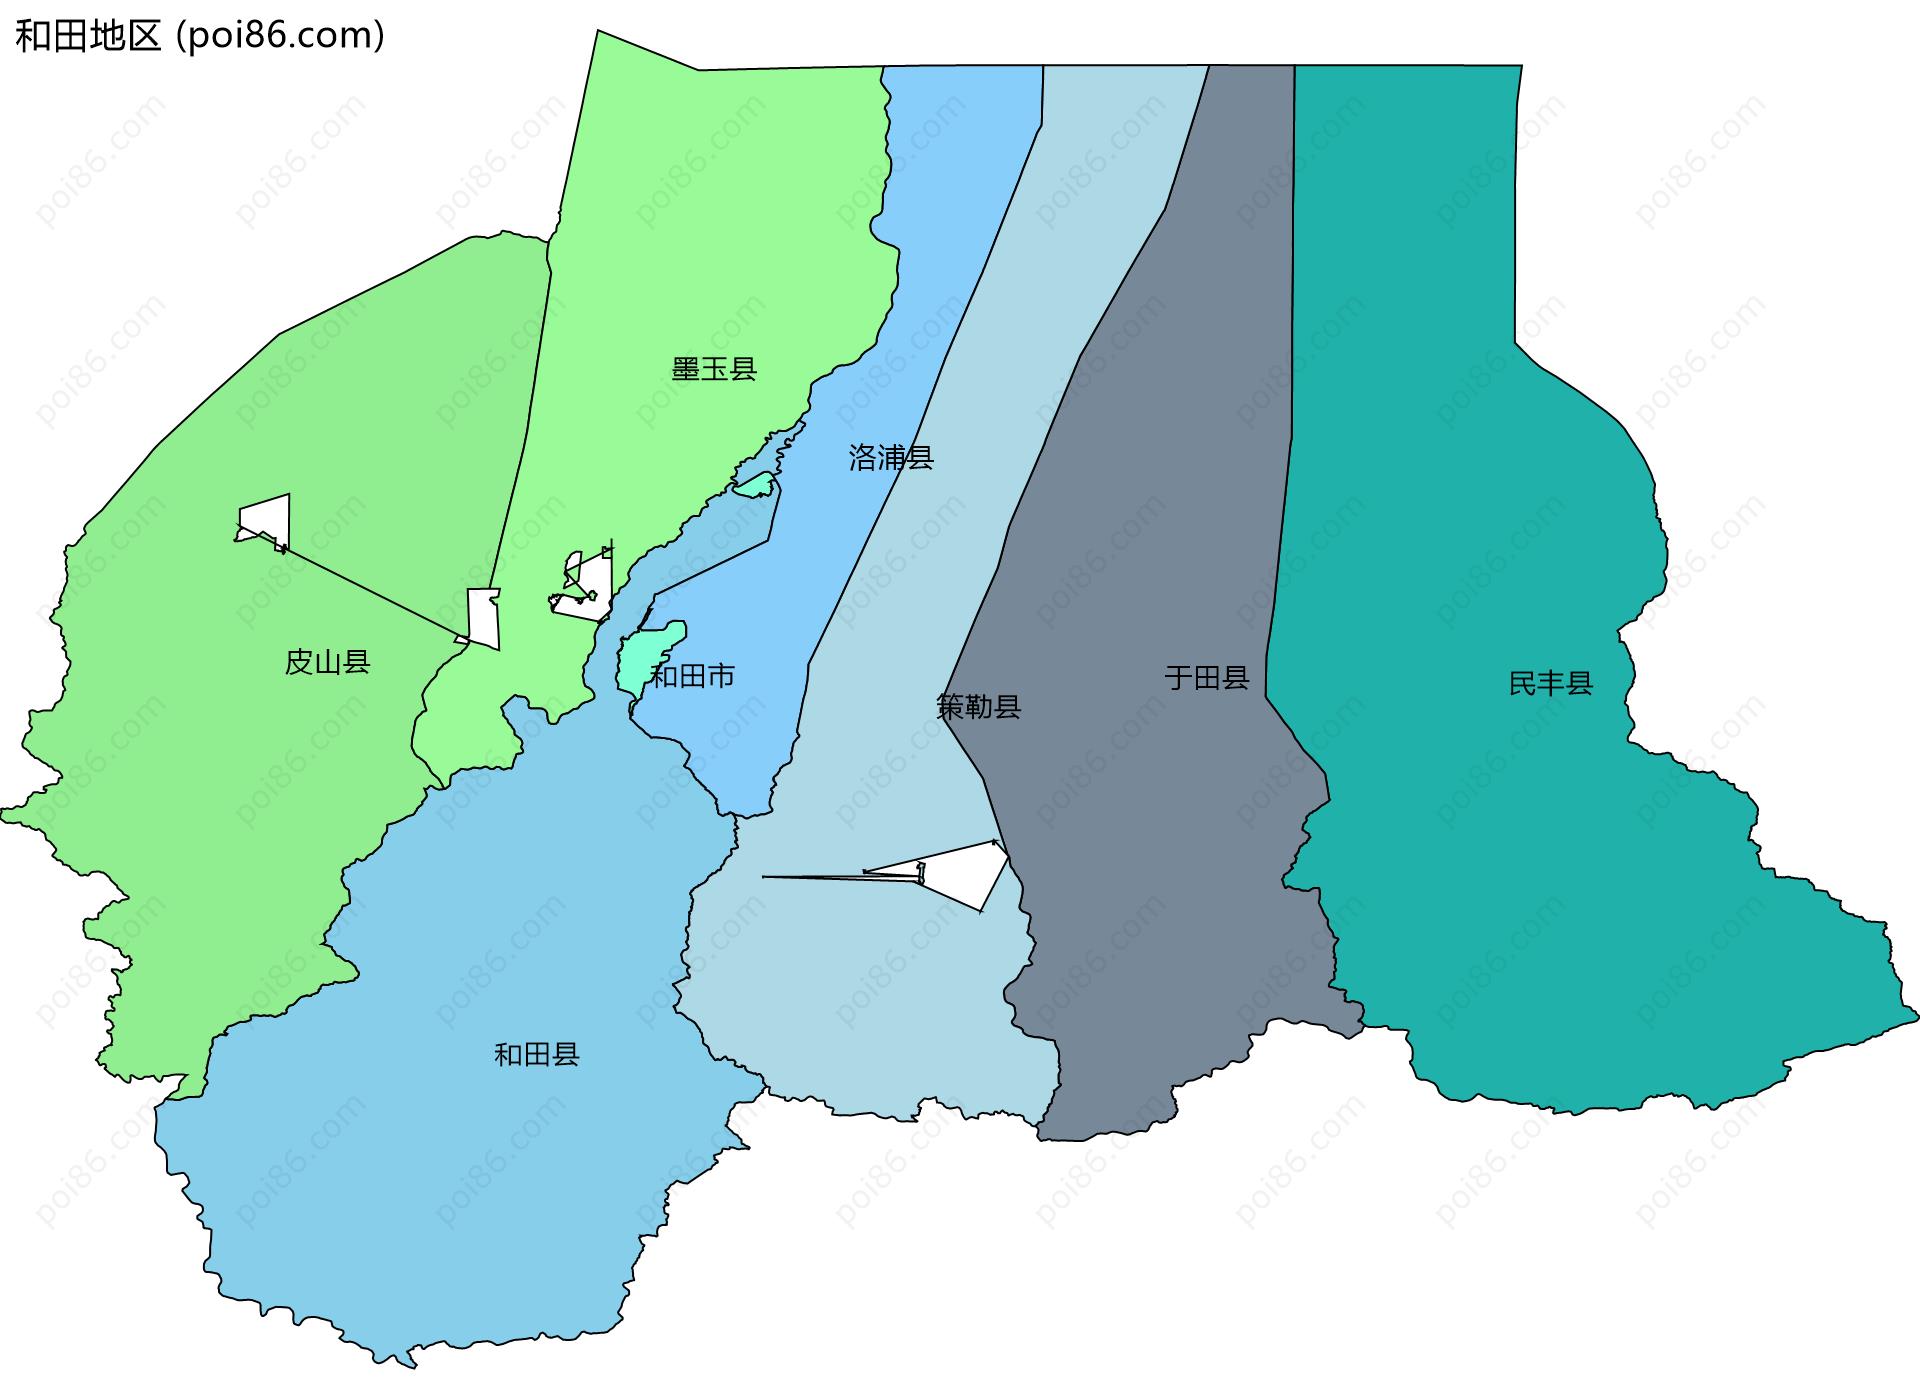 和田地区边界地图